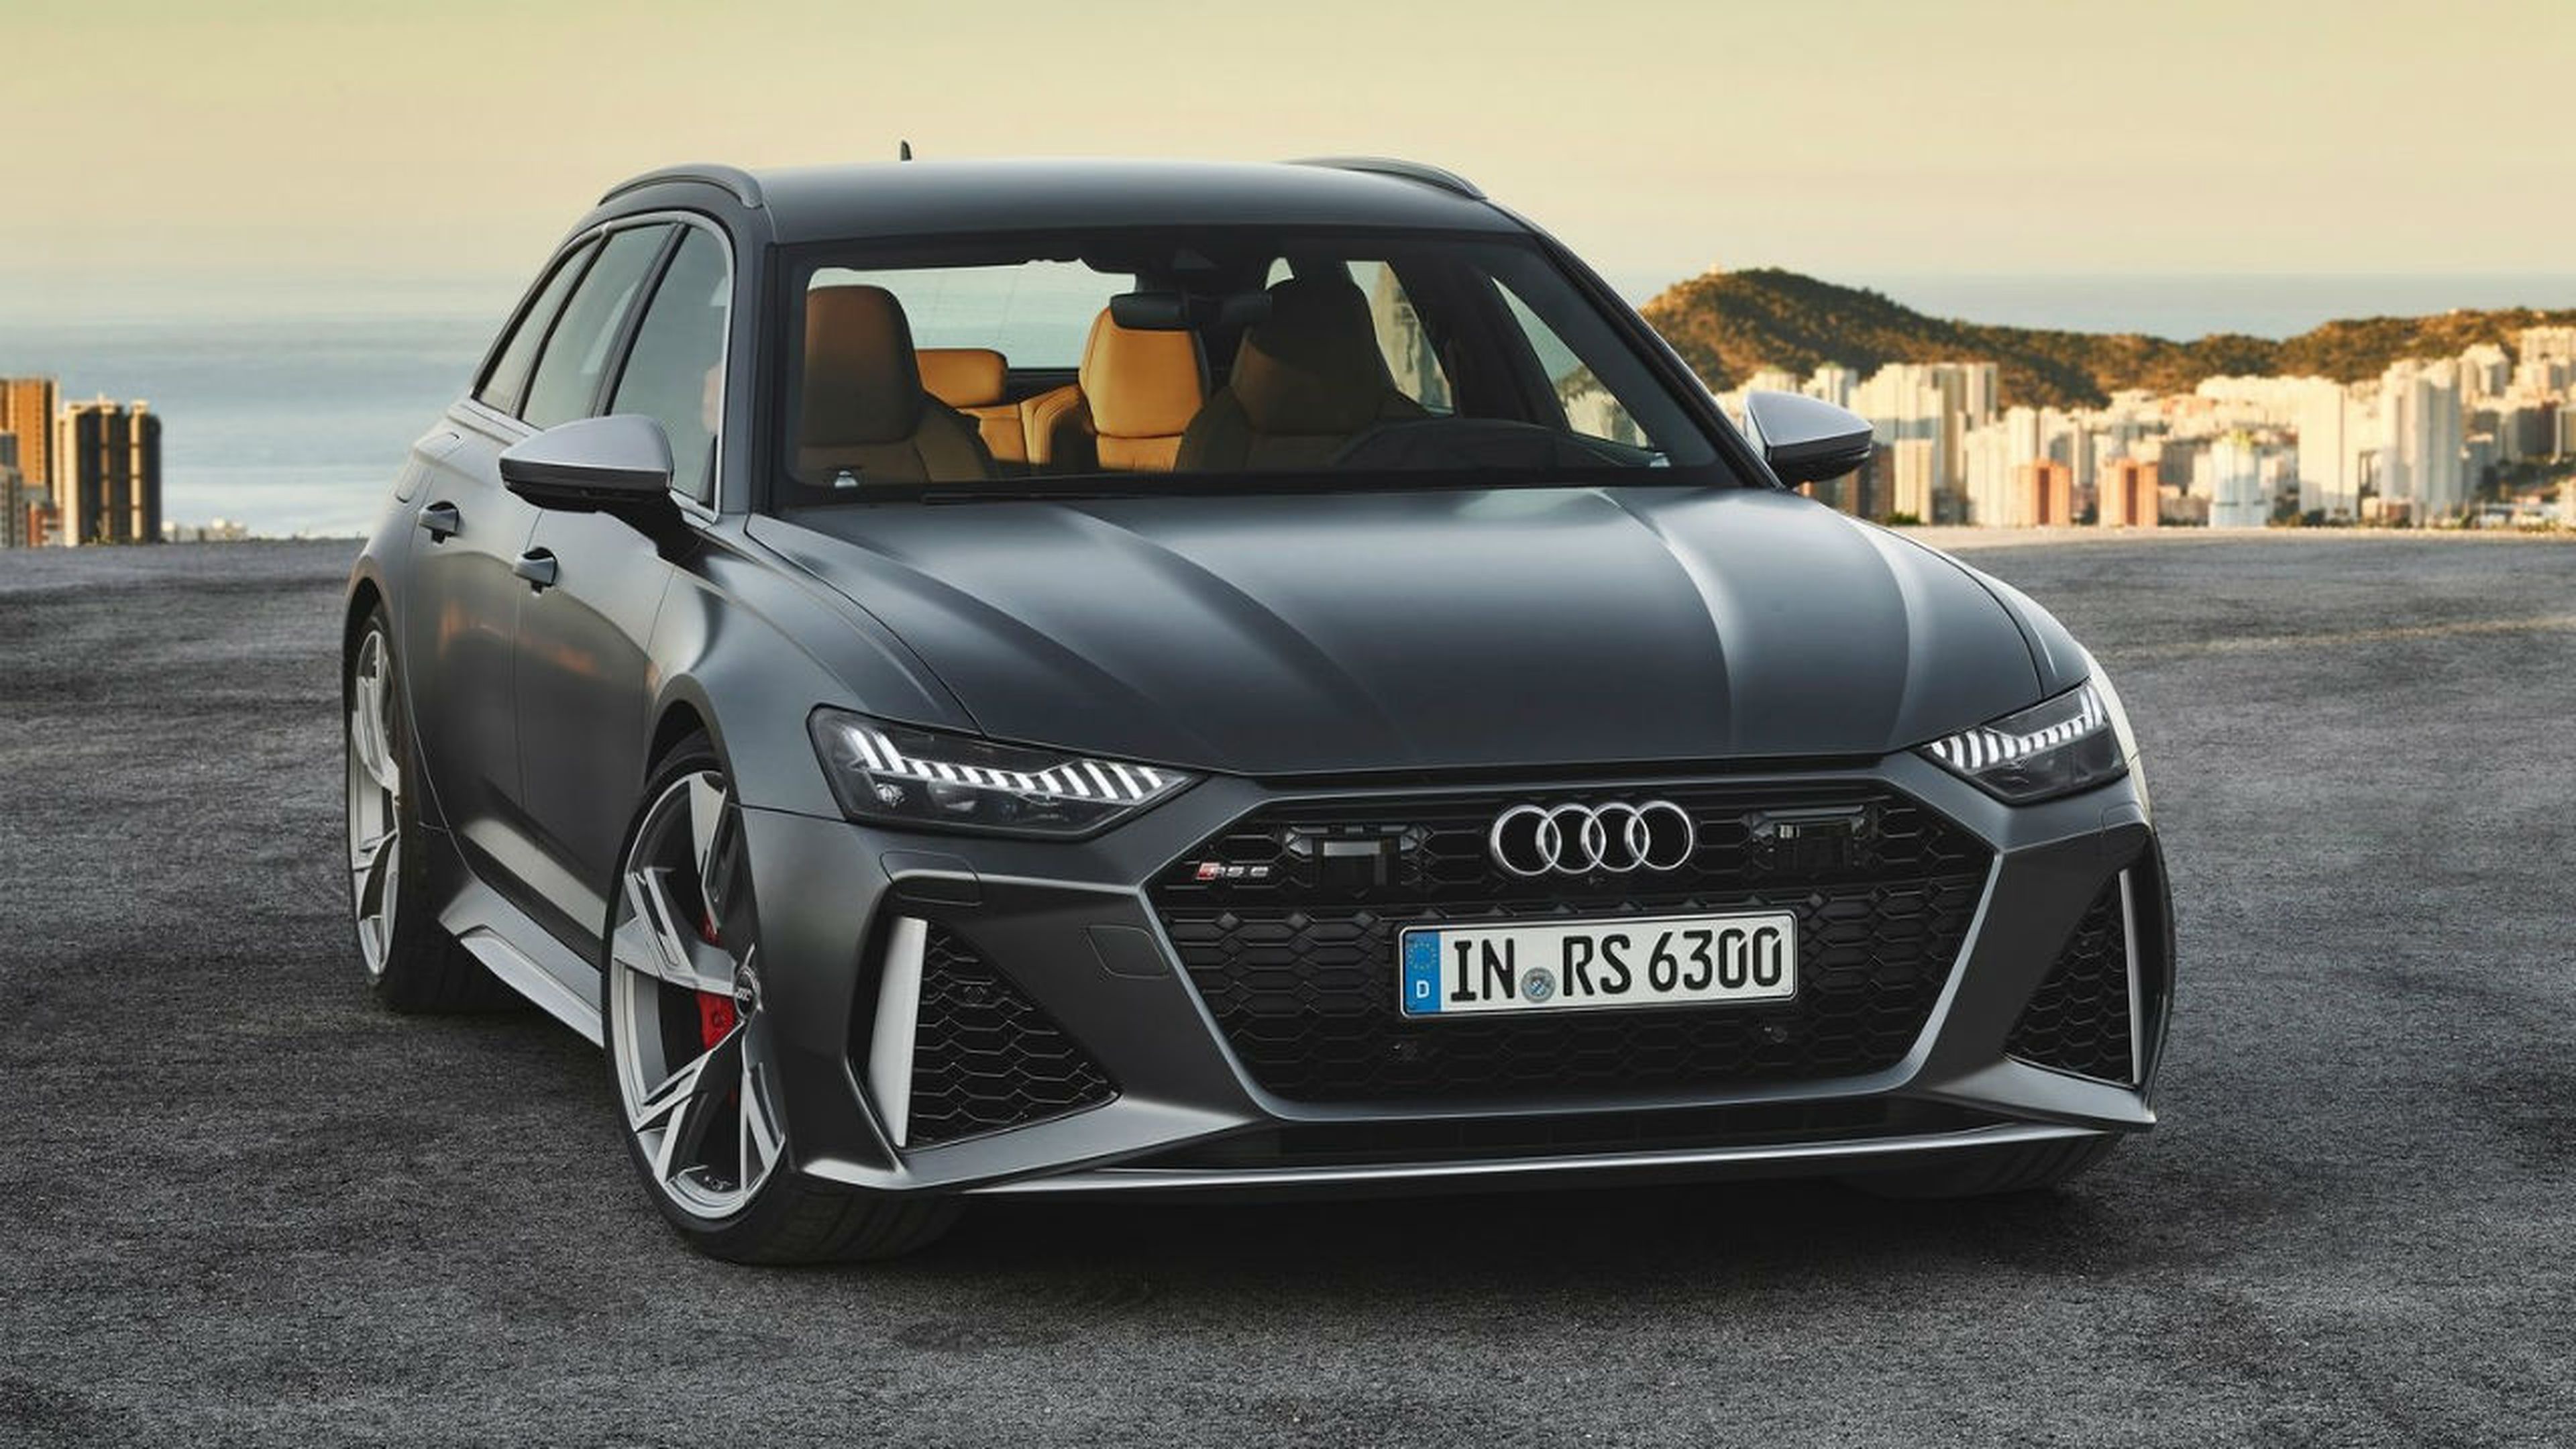 El nuevo Audi RS6 Avant 2020 presenta una estética mucho más agresiva que su predecesor.